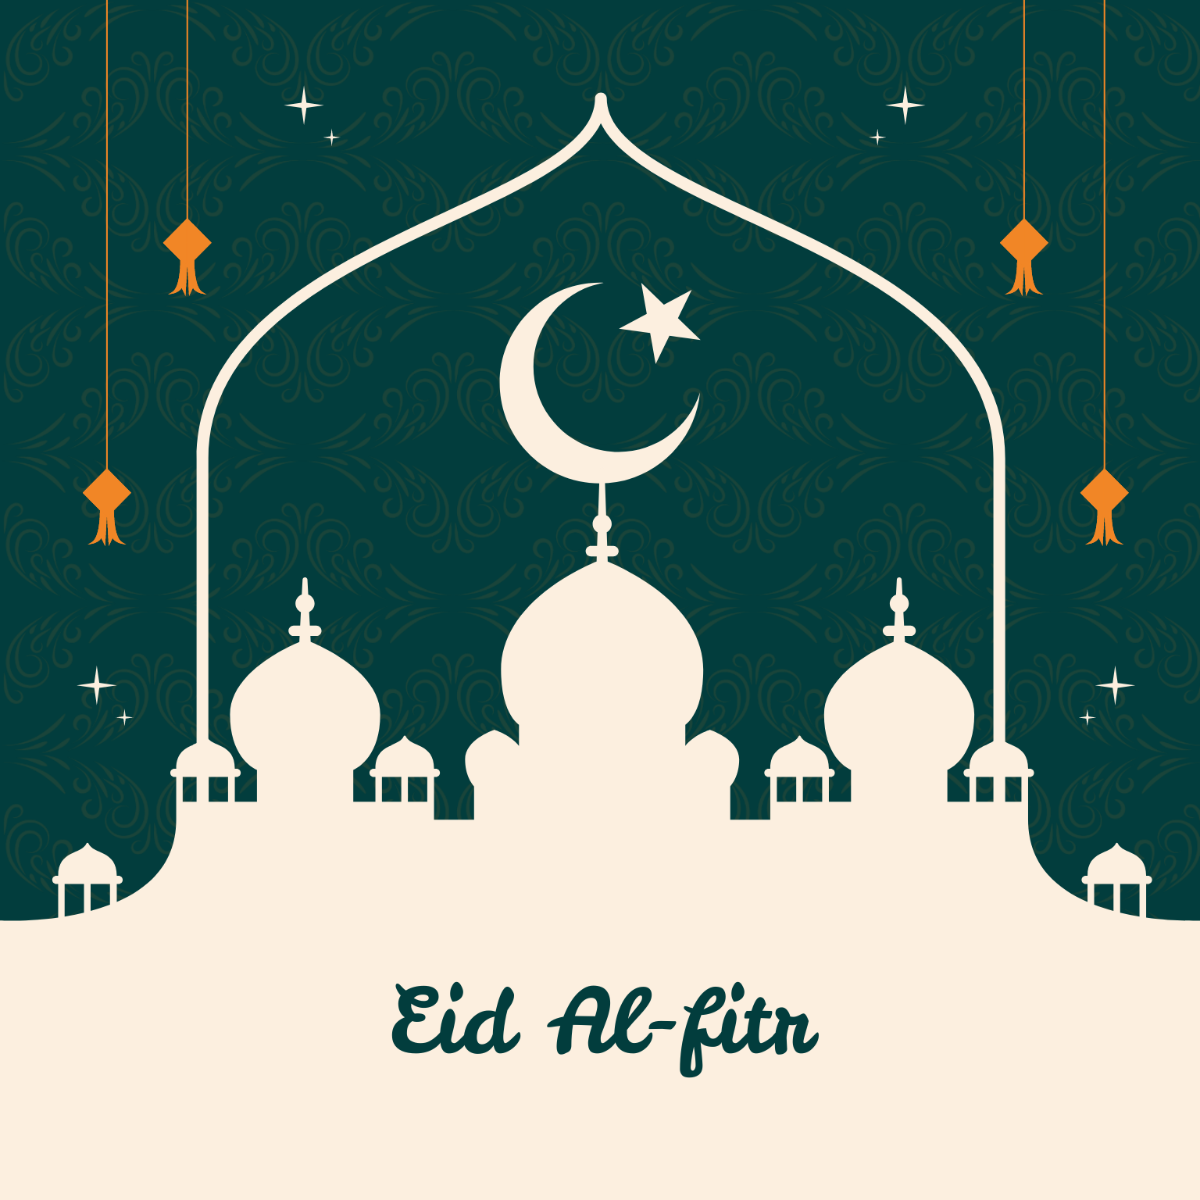 Free Eid Al-fitr Clipart Template